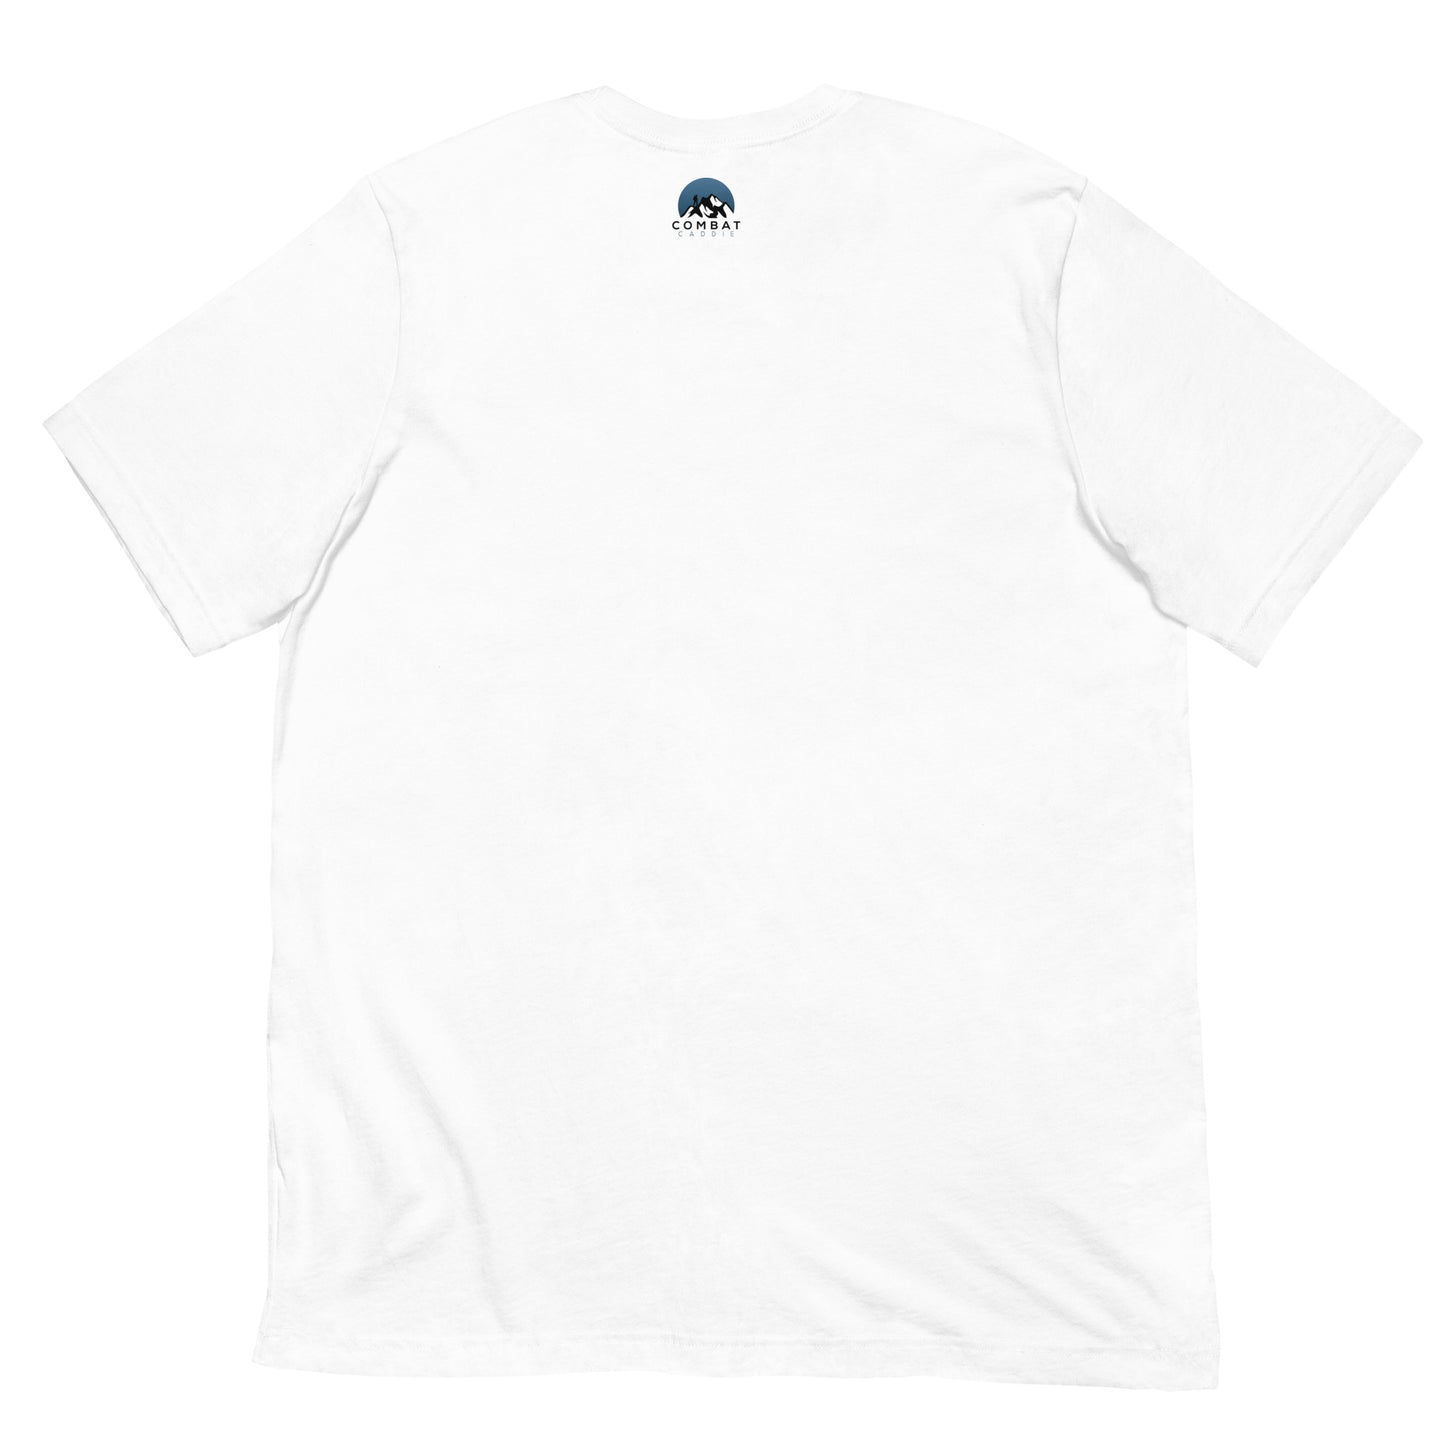 GOLF T-Shirt